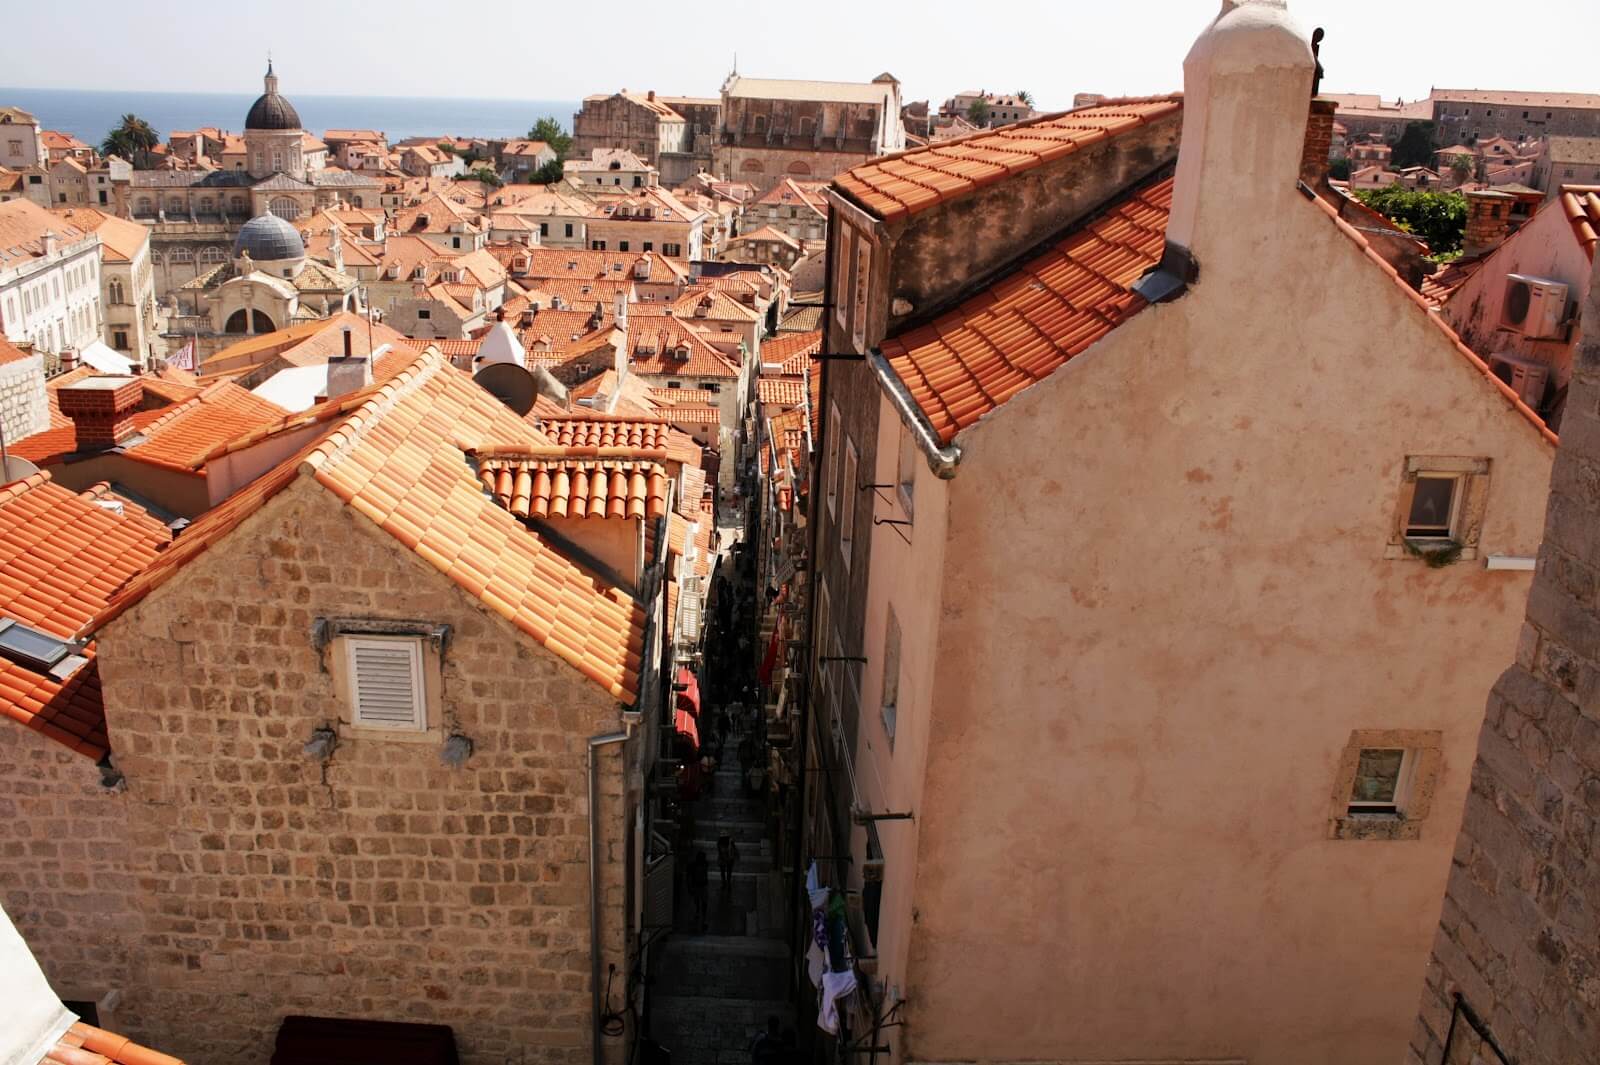 Jurnal de călătorie singuratică. Ziua 5 (Dubrovnik) 